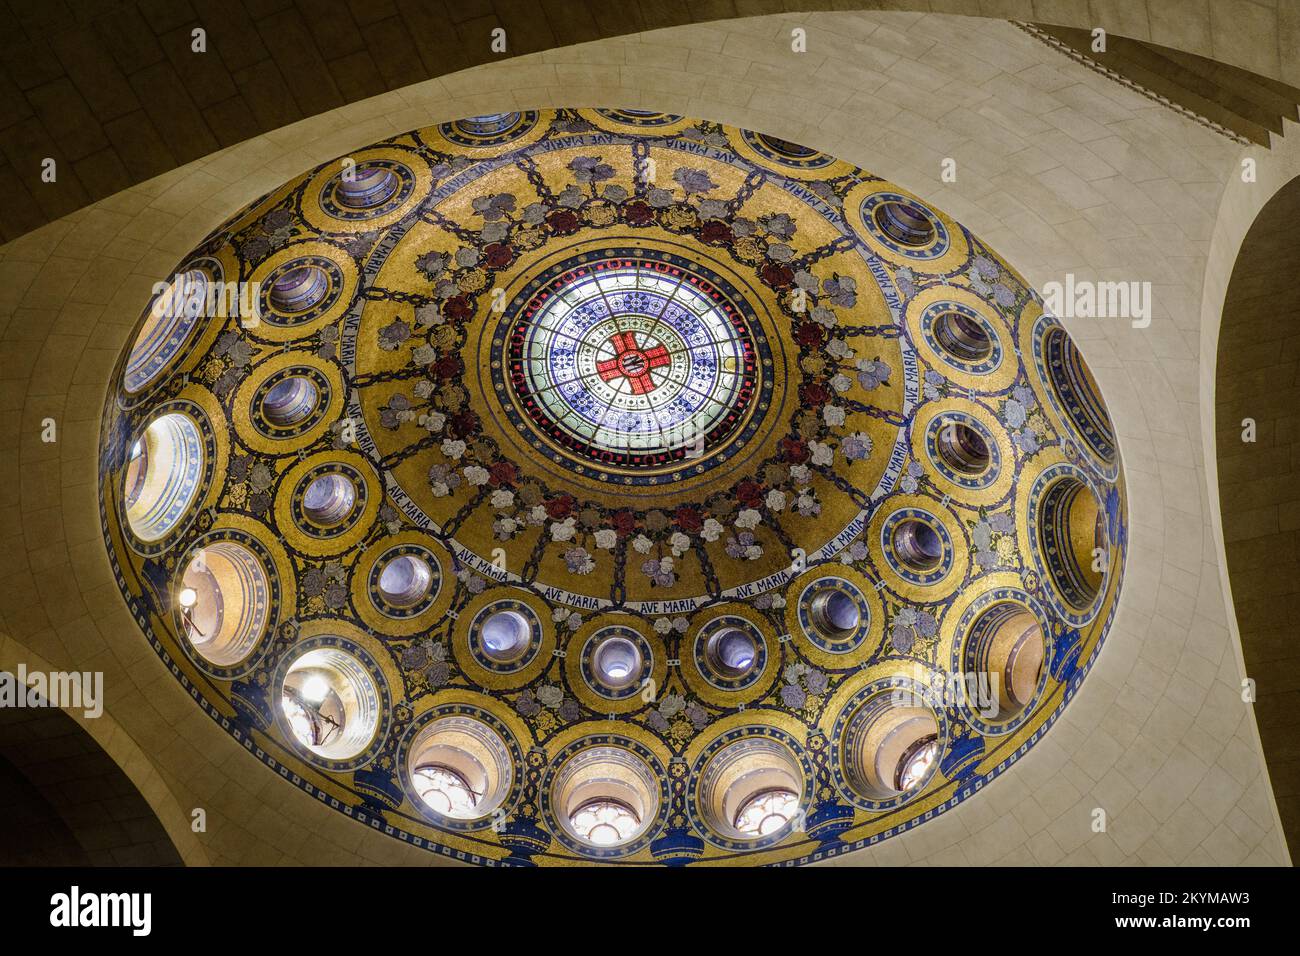 El mosaico dorado neobyzantino de la cúpula dentro de la basílica inferior (Basílica del Rosario) de Lourdes en los Pirineos franceses Foto de stock